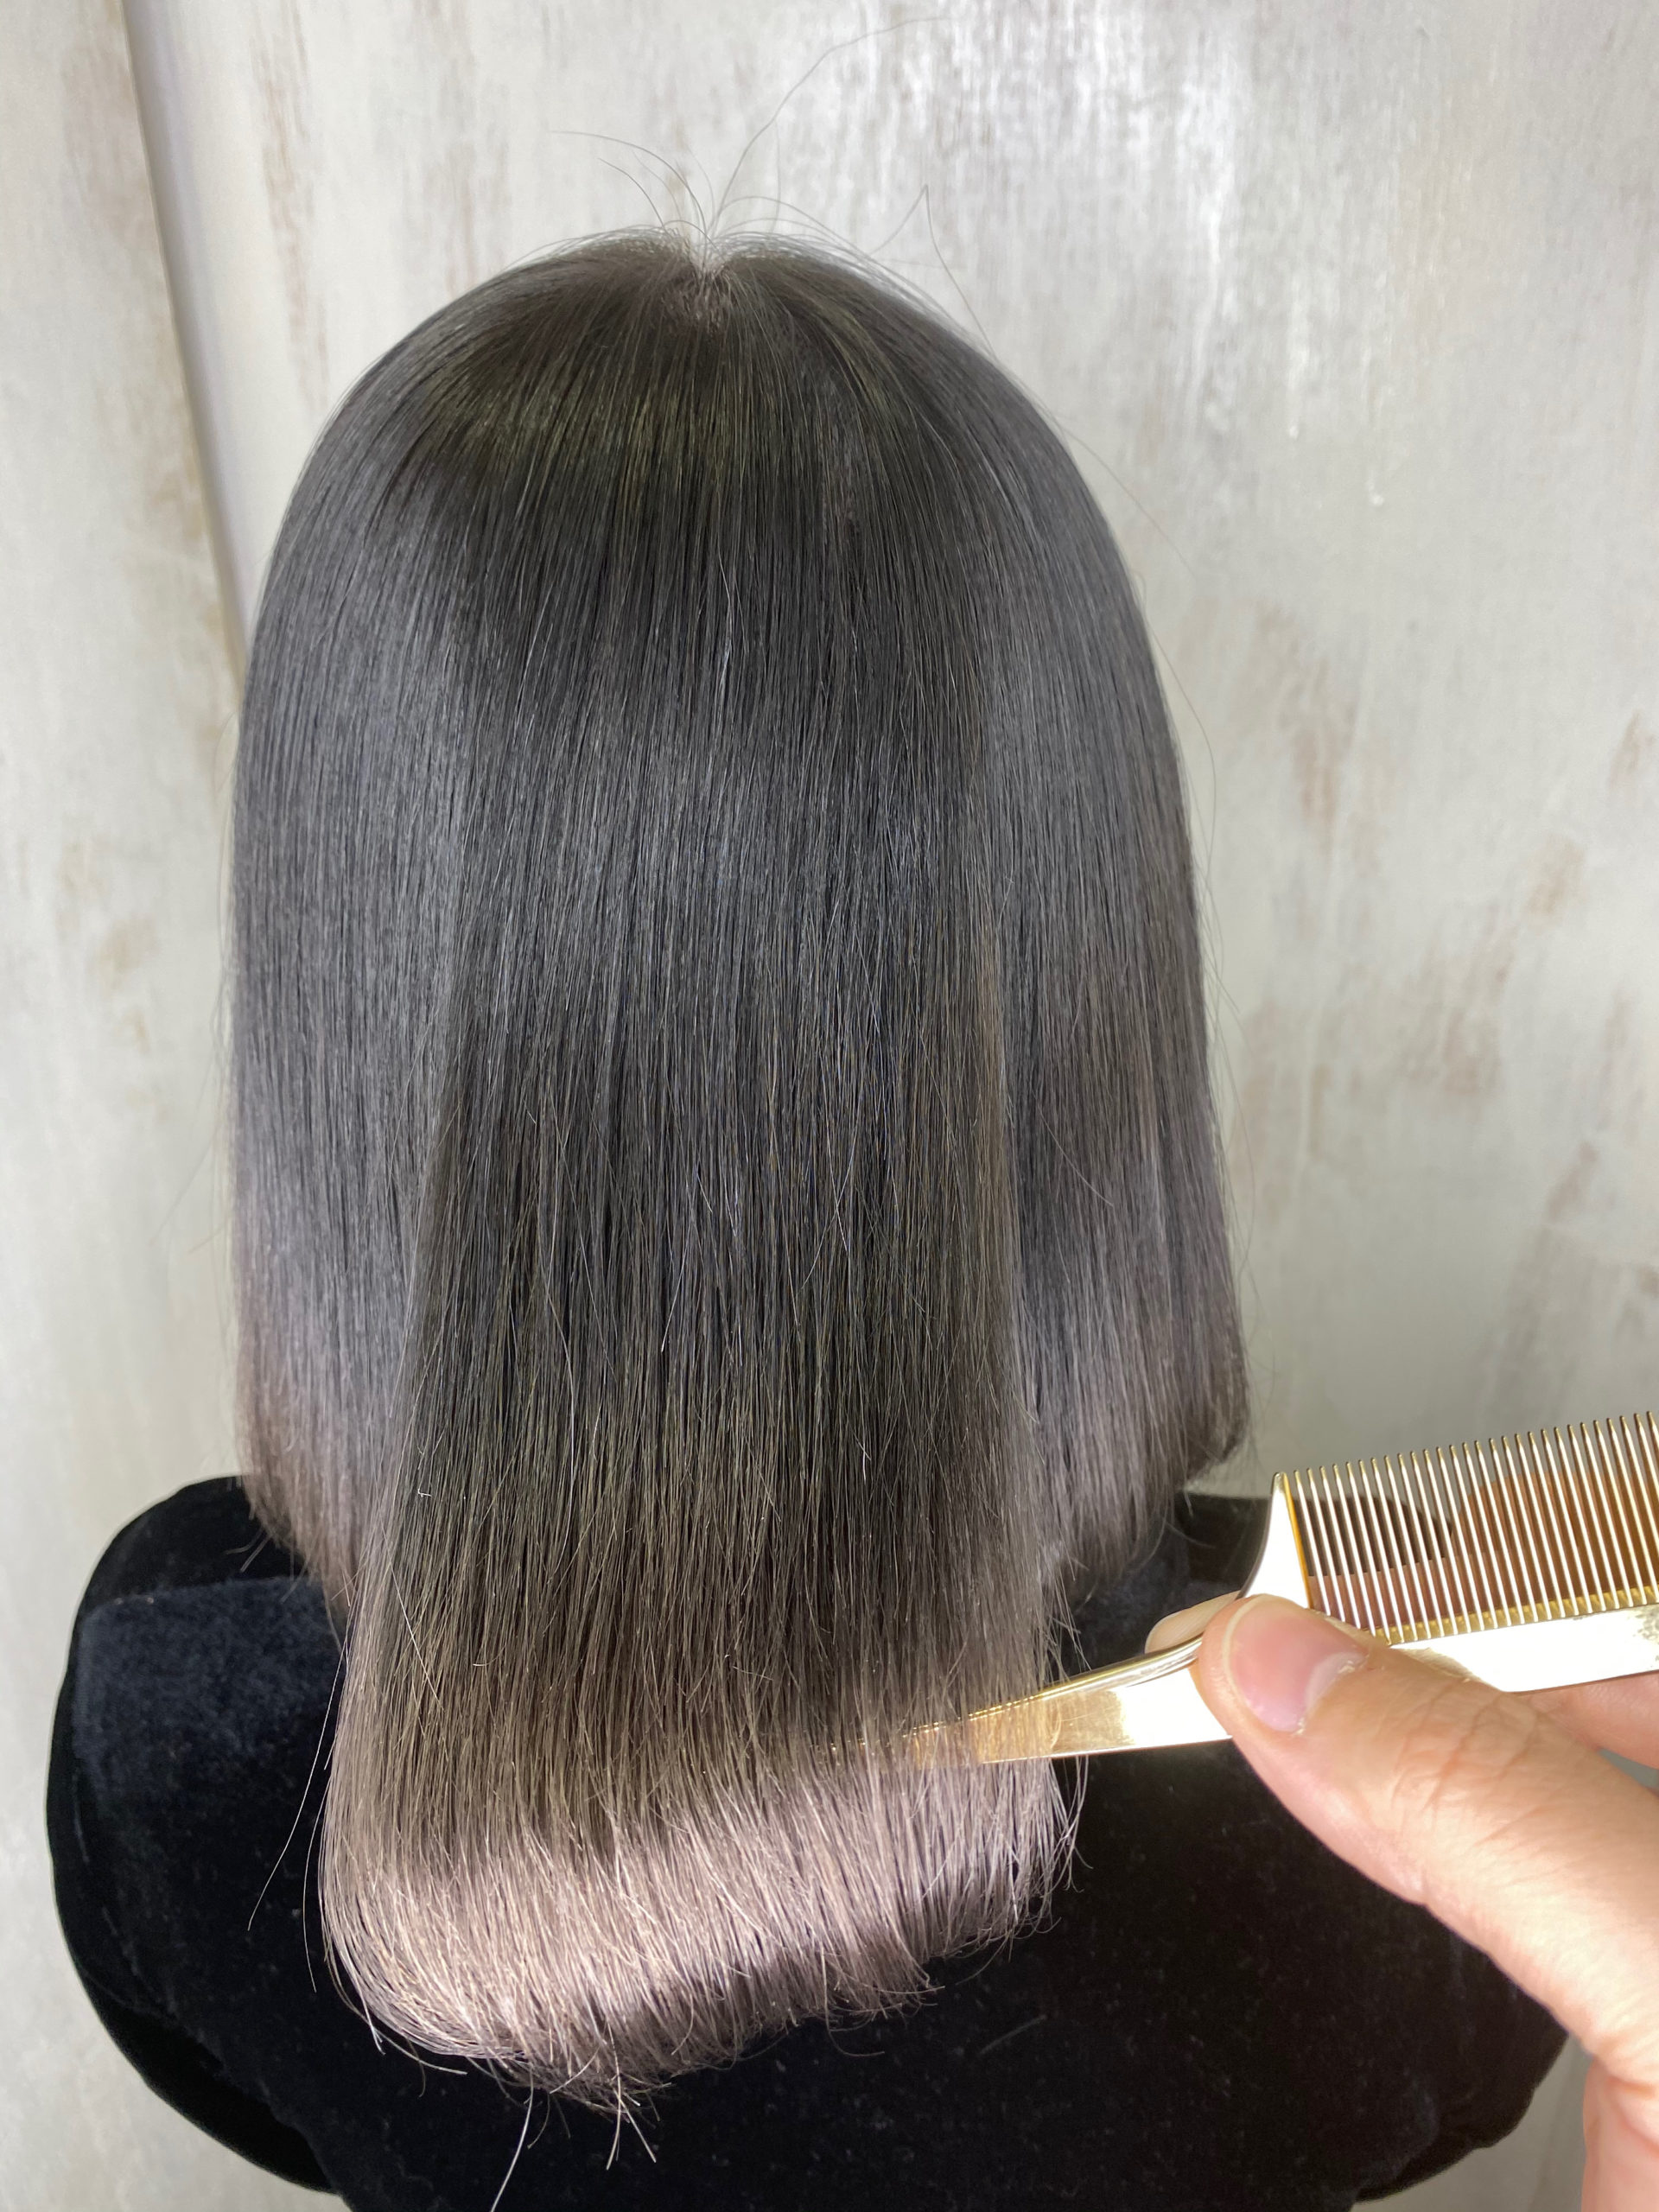 ジュエリーシステム×オレオルカラーでつるんとした艶髪カラー。原宿・表参道『髪のお悩みを解決するヘアケア美容師の挑戦』